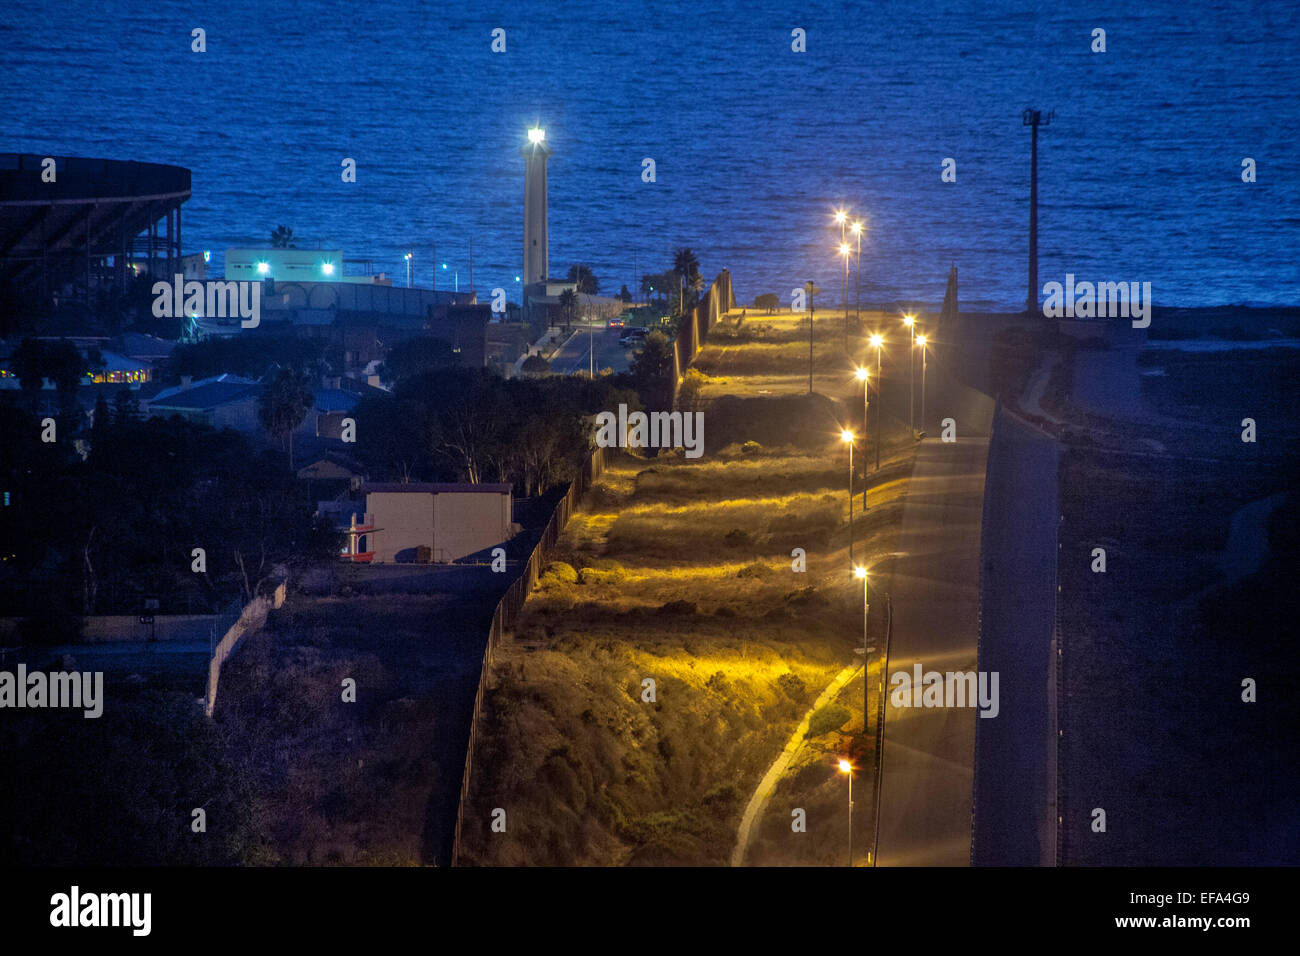 Natrium Leuchten Dampf die hügelige Staatsgrenze zwischen den USA und in Tijuana, Mexiko auf der linken Seite. Hinweis: Pazifischer Ozean und Leuchtturm im Hintergrund. Stockfoto